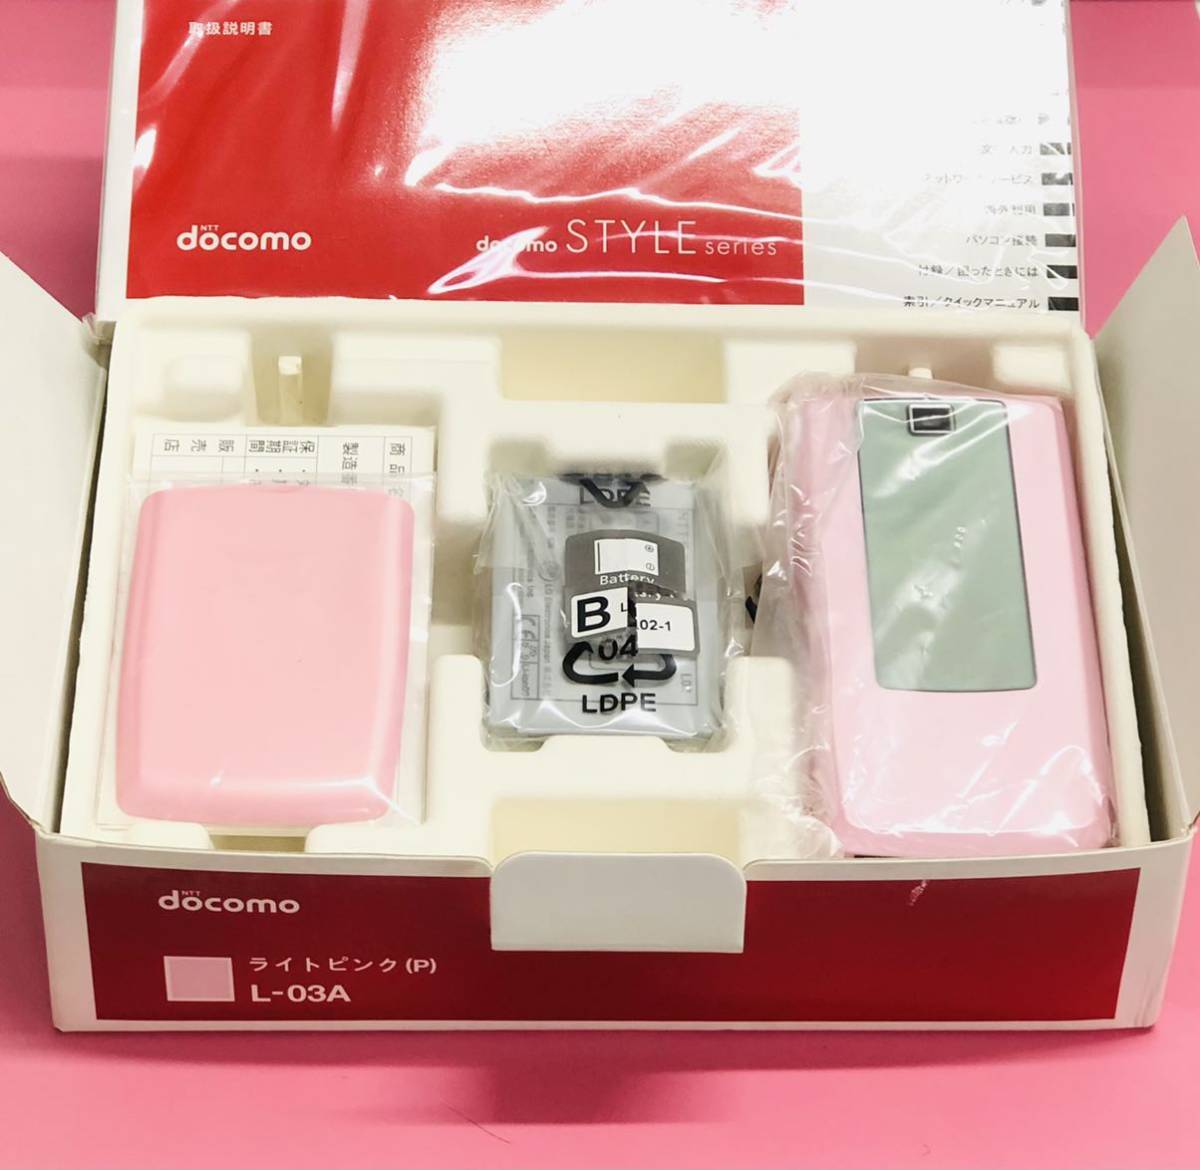 未使用 箱付き NTT Docomo L-03A ライトピンク 携帯電話 端末 STYLE series 2009.09月製 LGエレクトロニクス ガラケー ドコモ